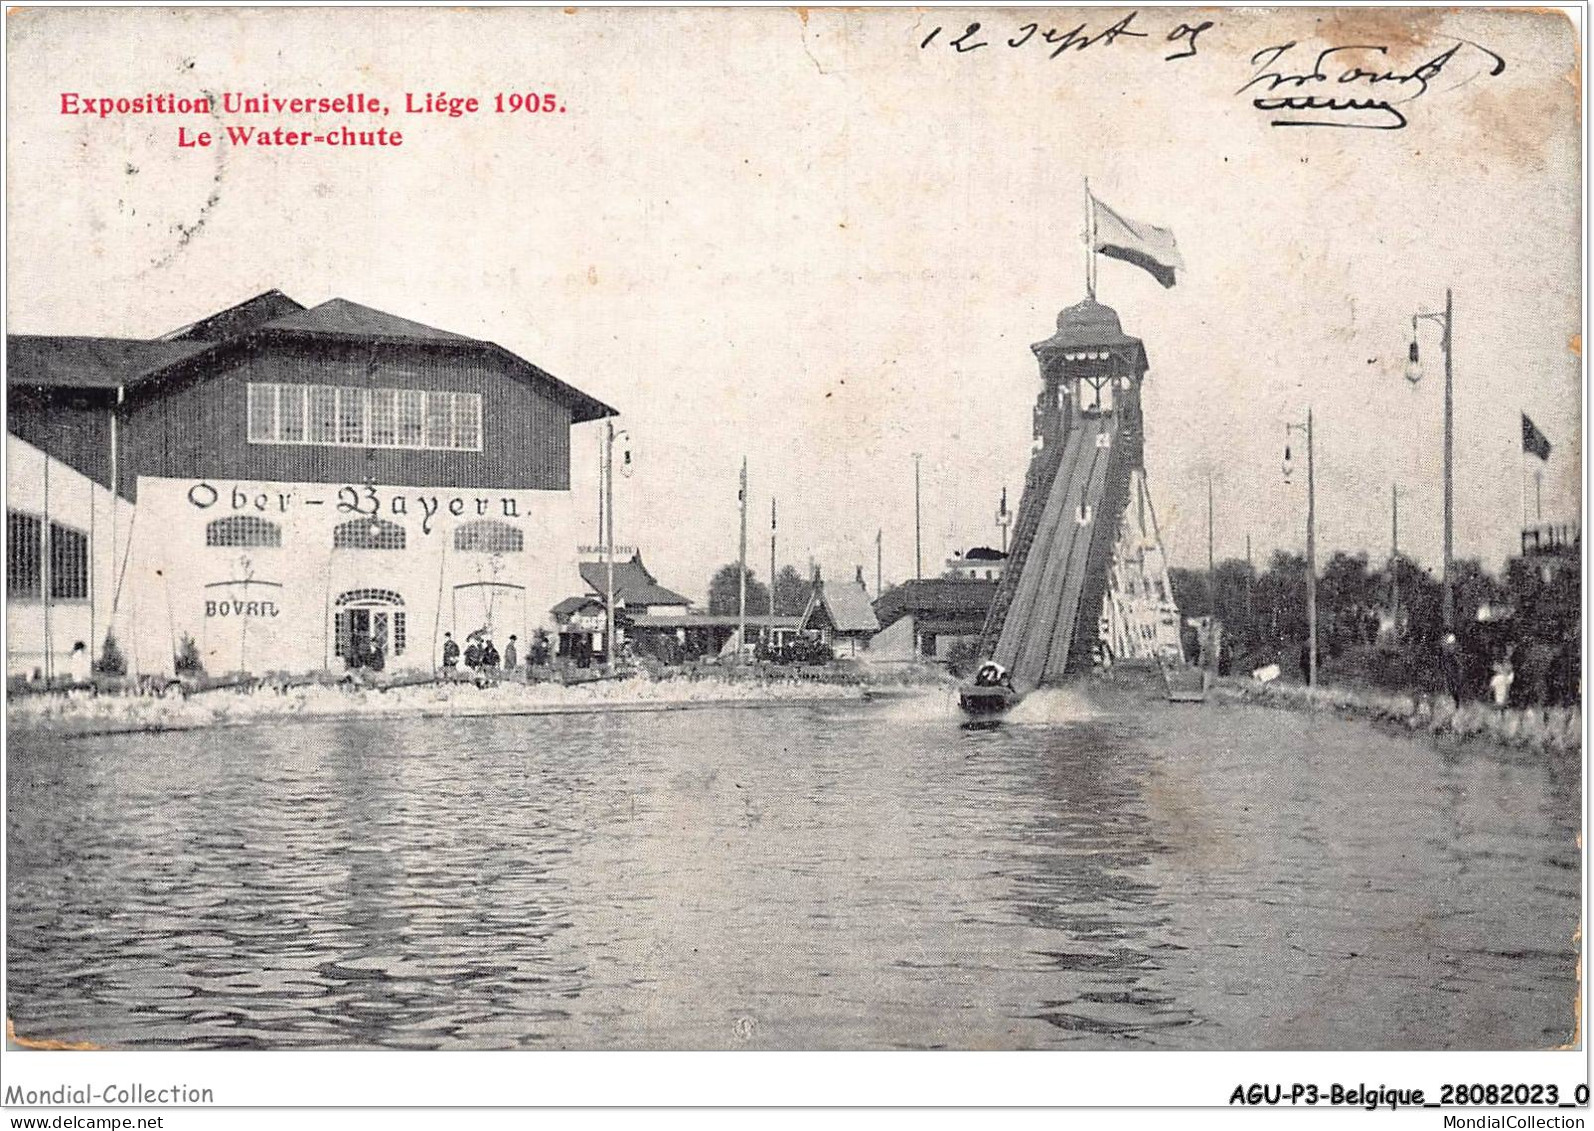 AGUP3-0144-BELGIQUE - Exposition Universelle - LIEGE 1905 - Le Water-chute - Lüttich